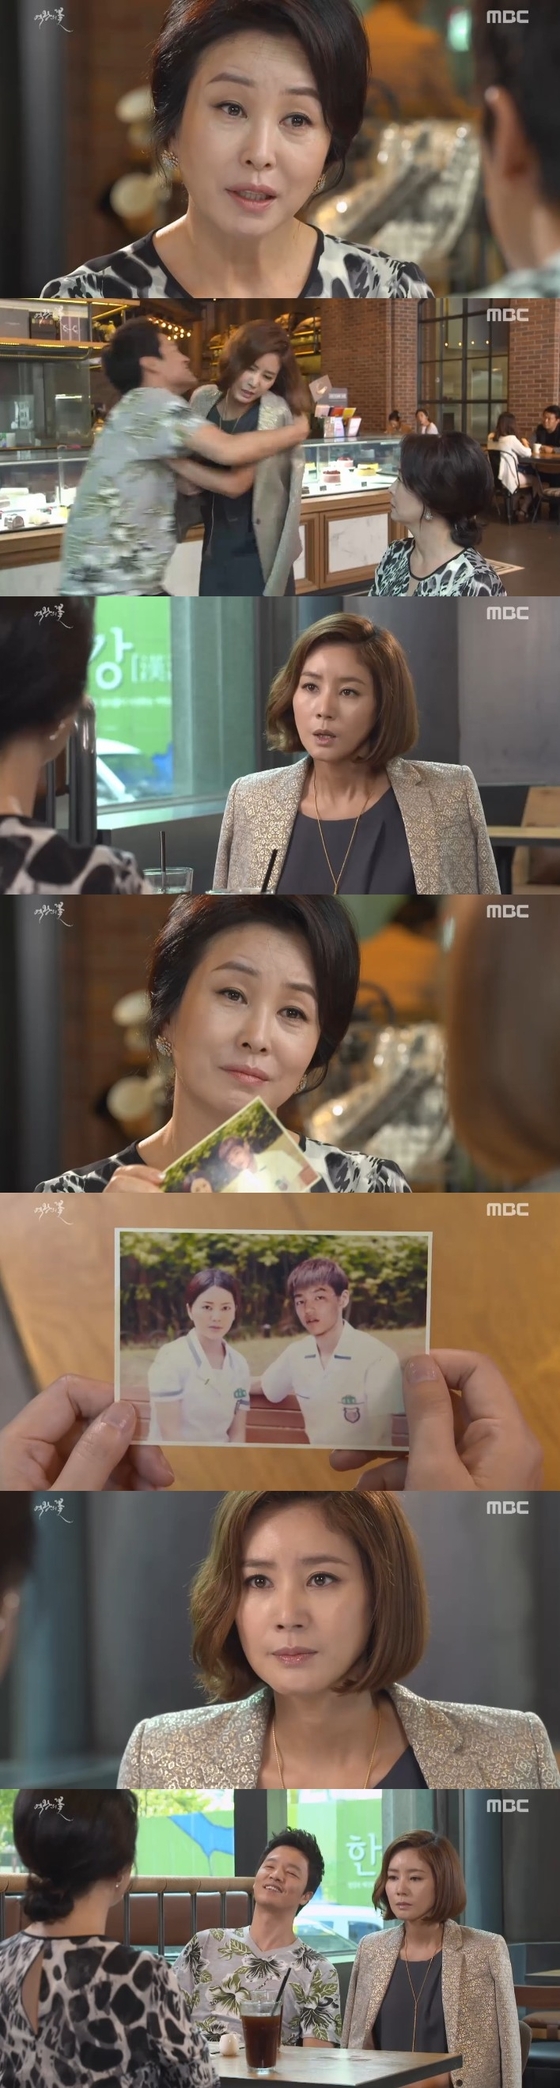 4일 밤 10시 MBC 주말드라마 ´여왕의 꽃´ 33회가 방송됐다. © 뉴스1스포츠 / MBC ´여왕의 꽃´ 캡처